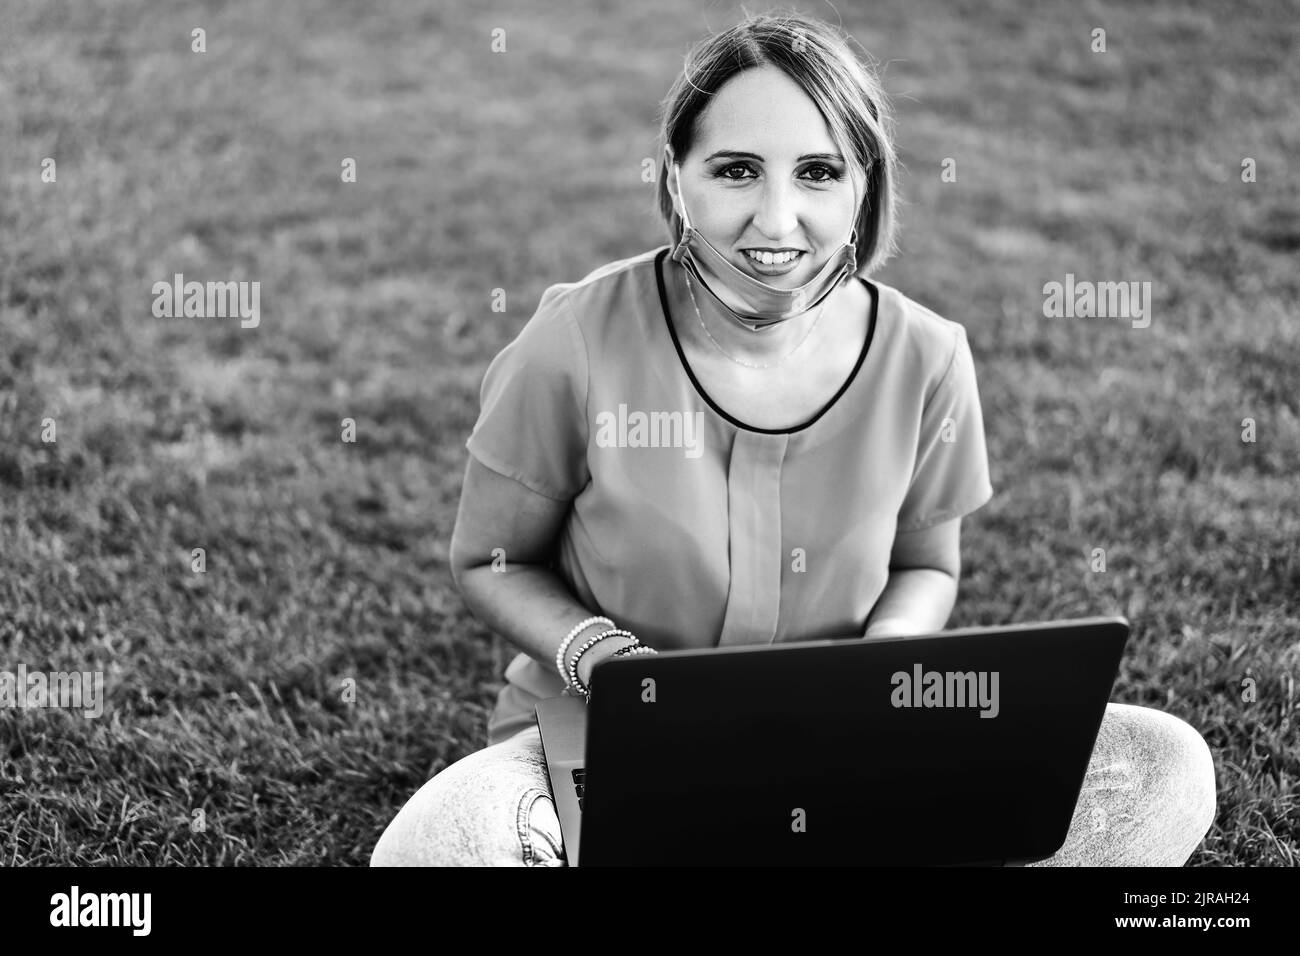 Frau 40 Jahre alt arbeitet im Freien mit Laptop während Coronavirus Outbreak - lächelnde weibliche Unternehmer sitzen auf Rasen mit persönlichen Während des Computers Stockfoto